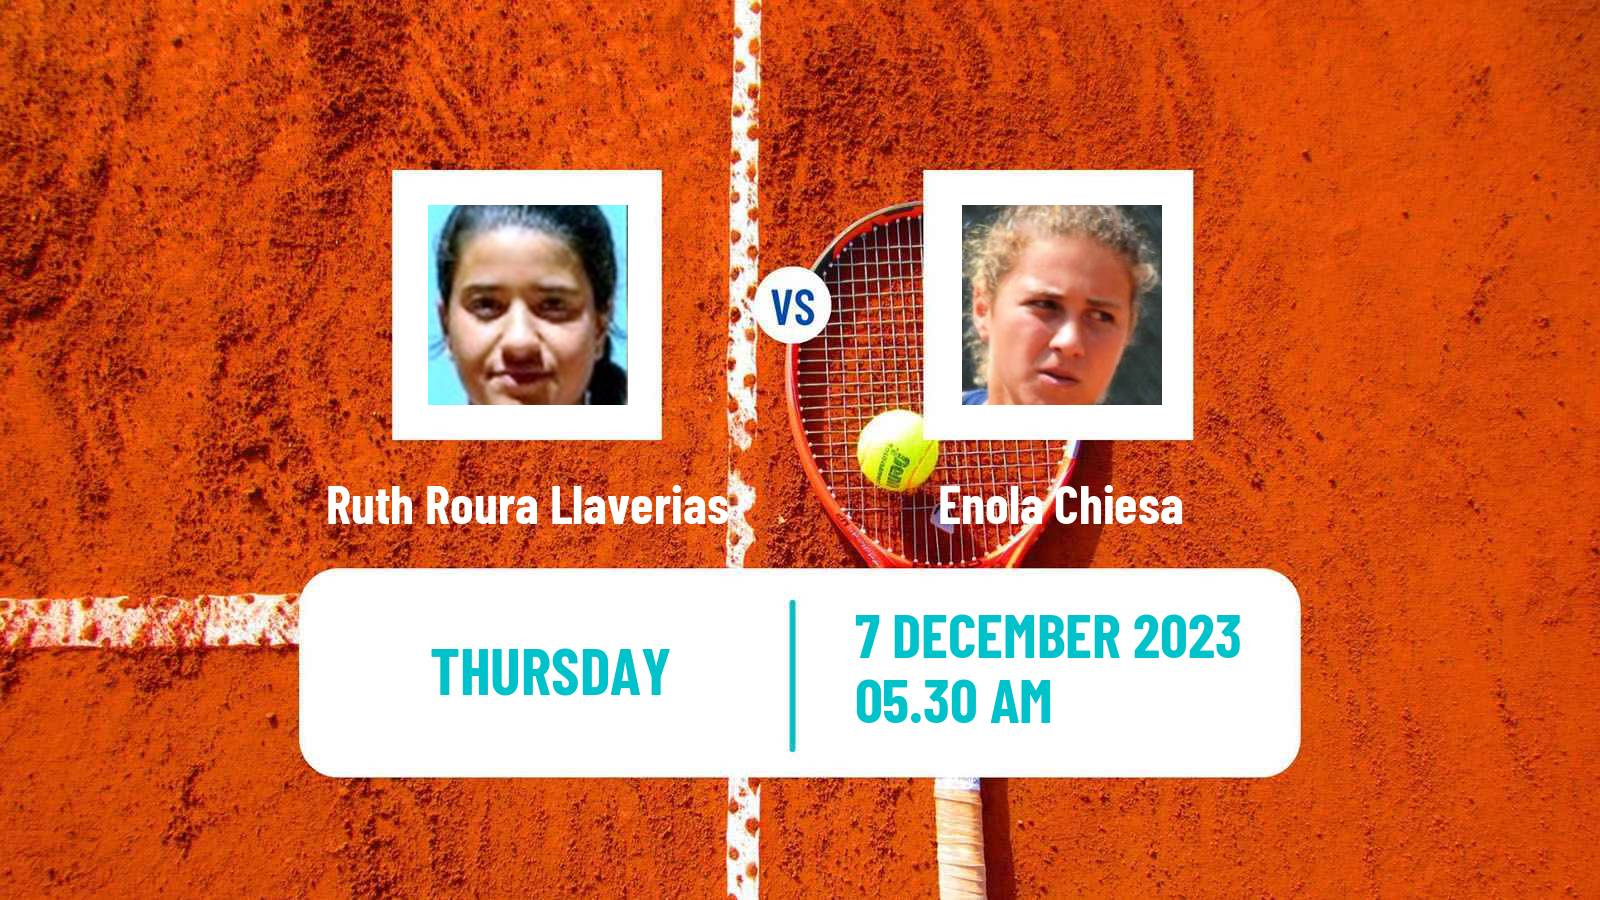 Tennis ITF W15 Valencia 2 Women Ruth Roura Llaverias - Enola Chiesa